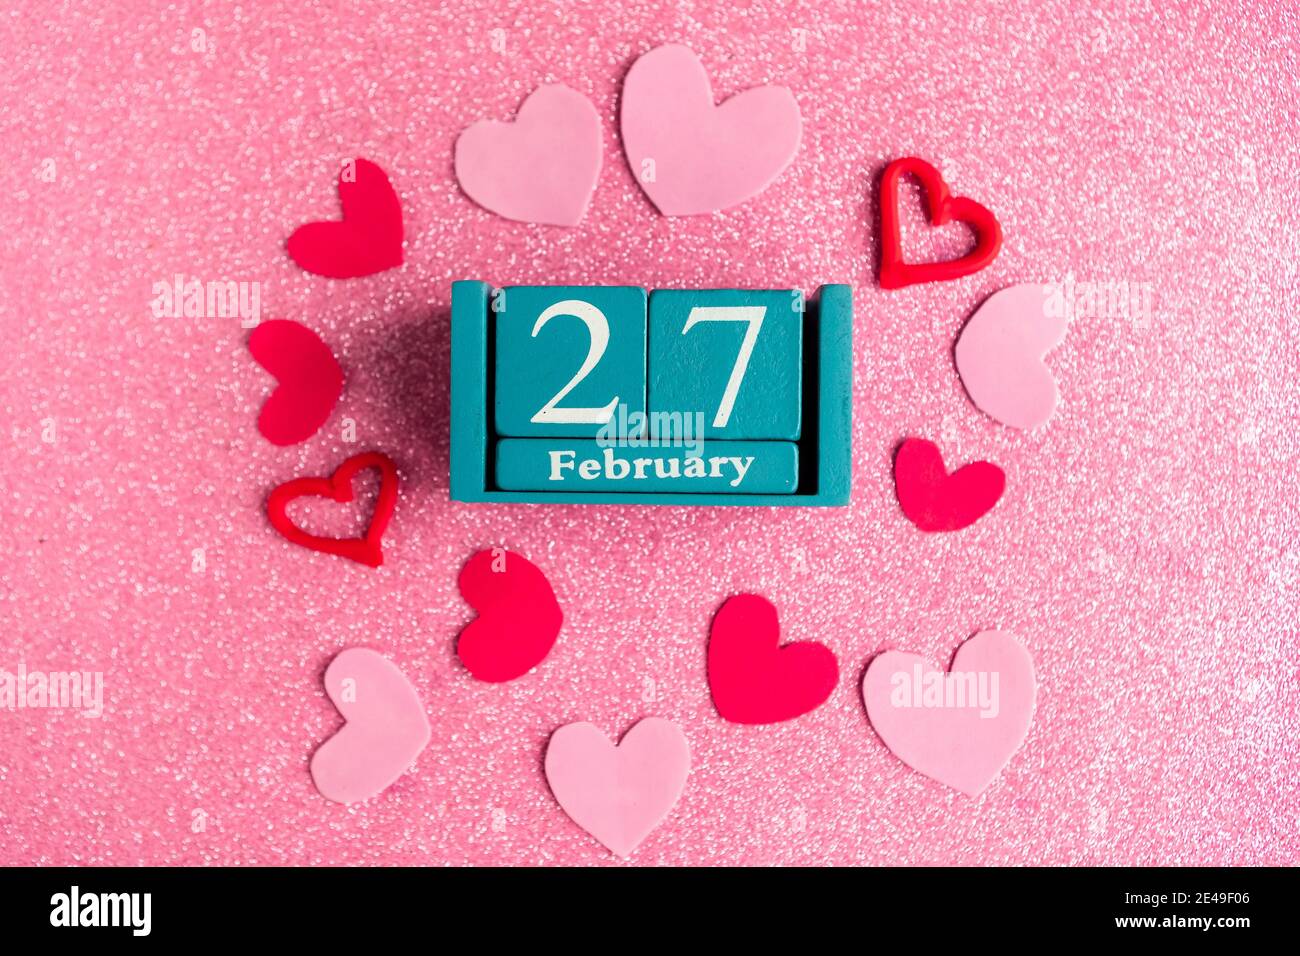 Février 27. Calendrier cube bleu avec mois et date et décorations sur fond rose scintillant. Banque D'Images